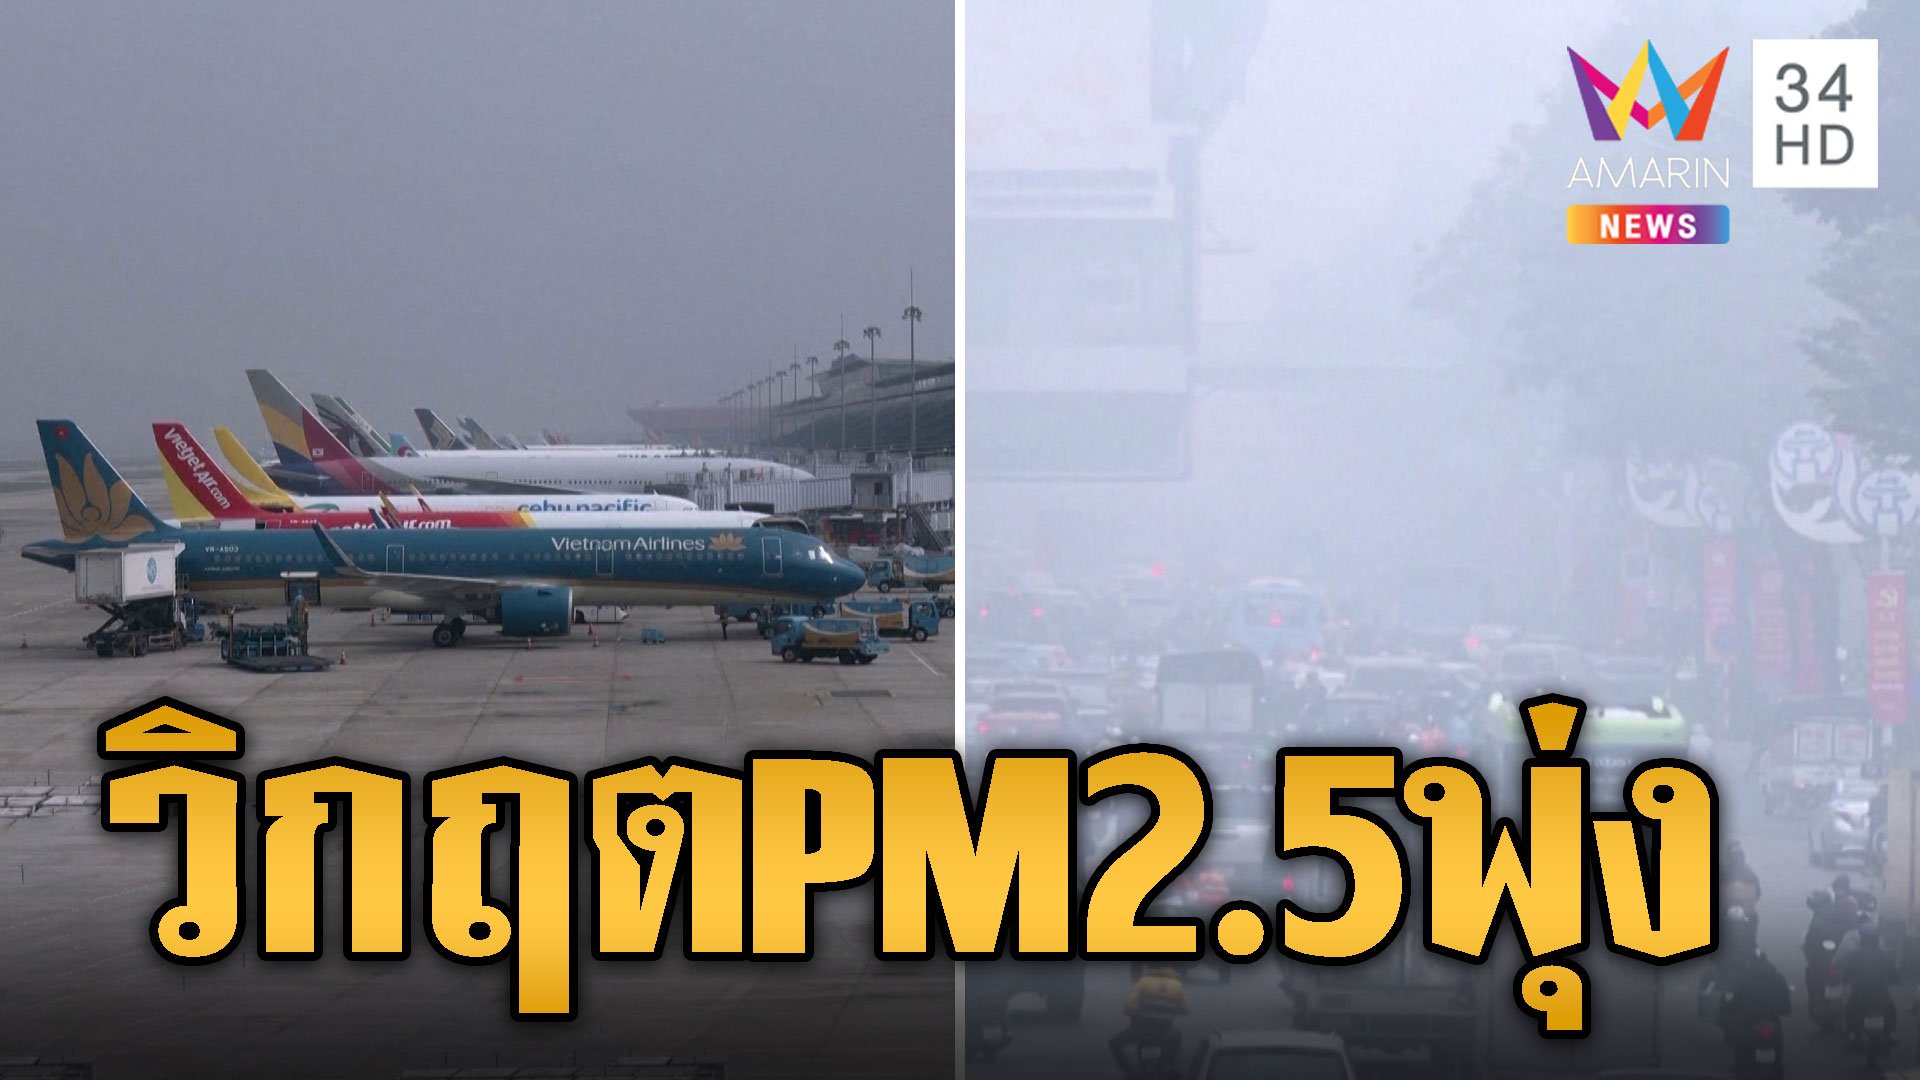 ฮานอยวิกฤต PM2.5 พุ่ง ขับรถมองทางแทบไม่เห็น กระทบเที่ยวบินอื้อ | ข่าวอรุณอมรินทร์ | 3 ก.พ. 67 | AMARIN TVHD34